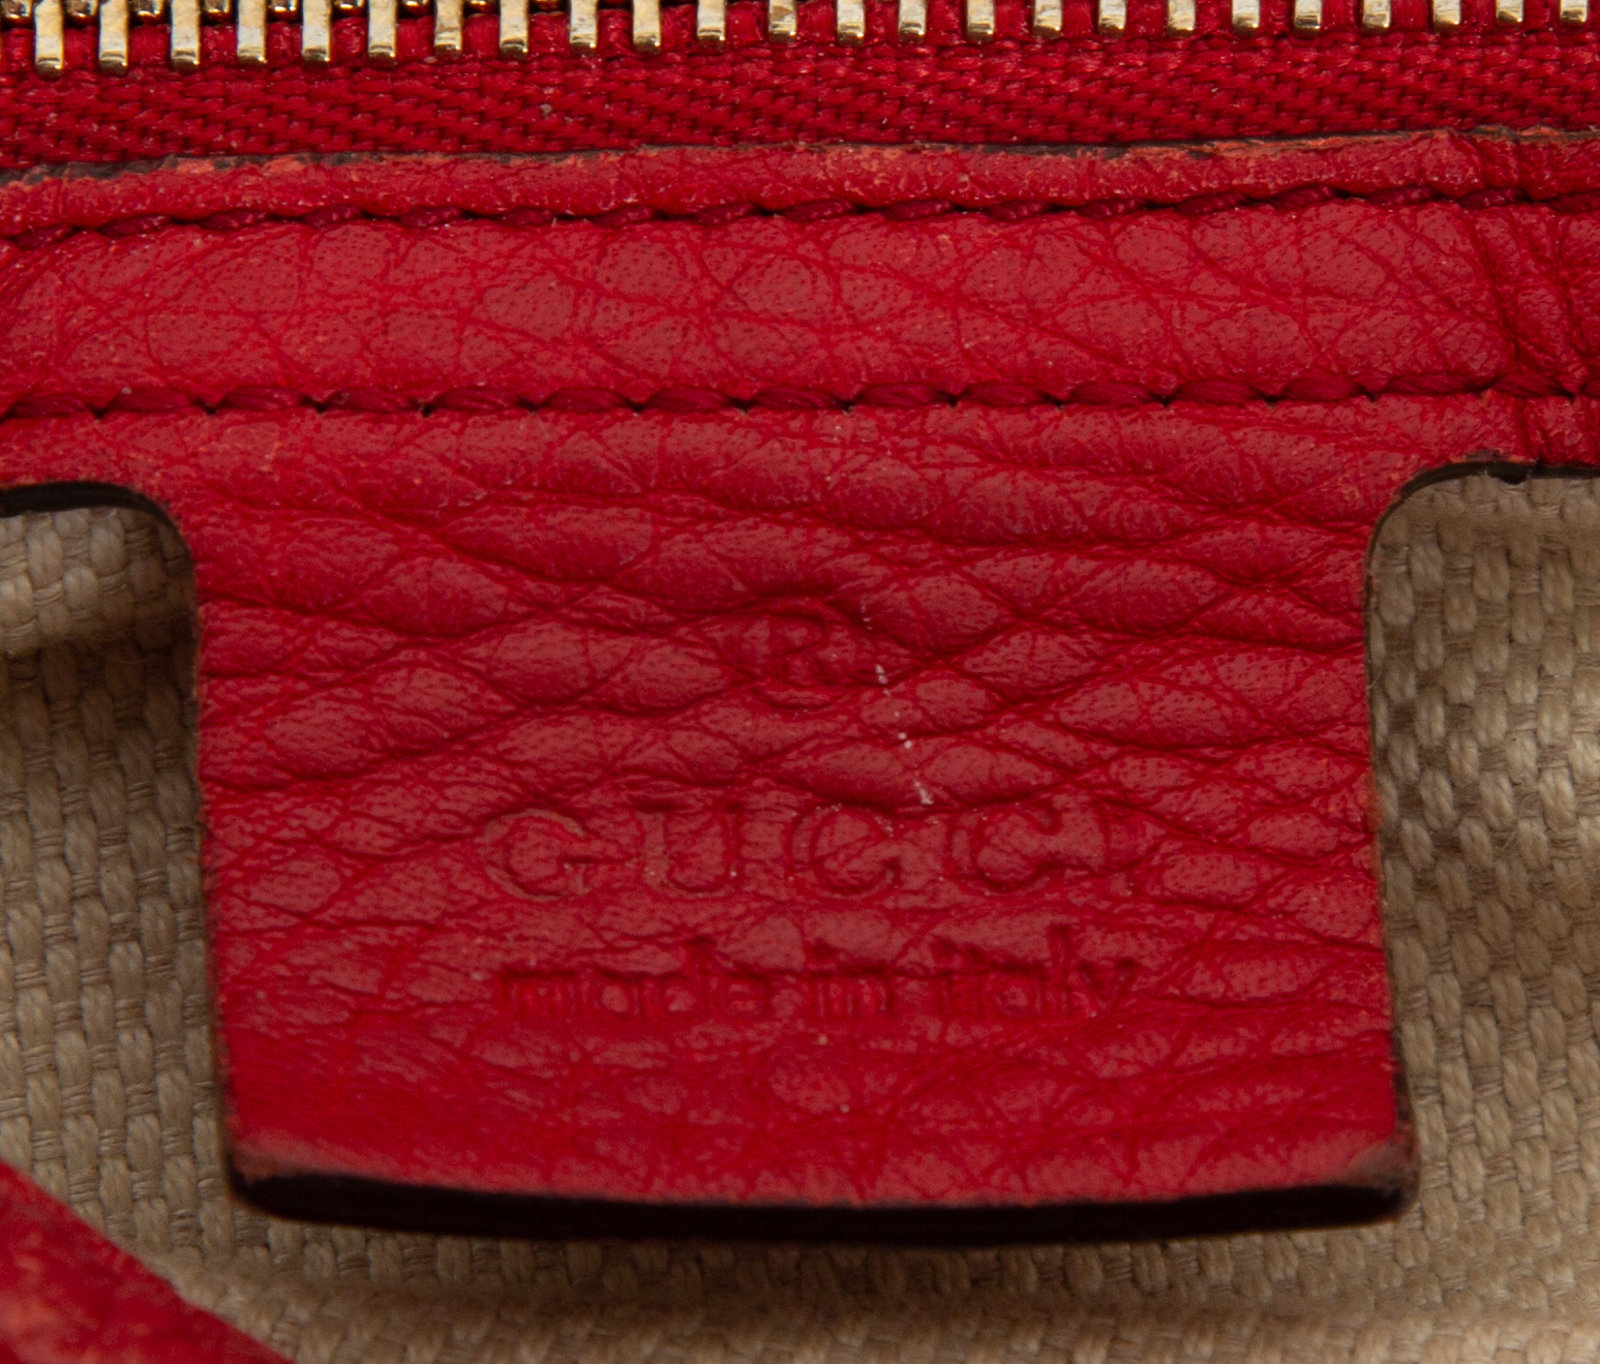 GUCCI Soho Pebbled Leather Hobo Shoulder Bag Red 282304